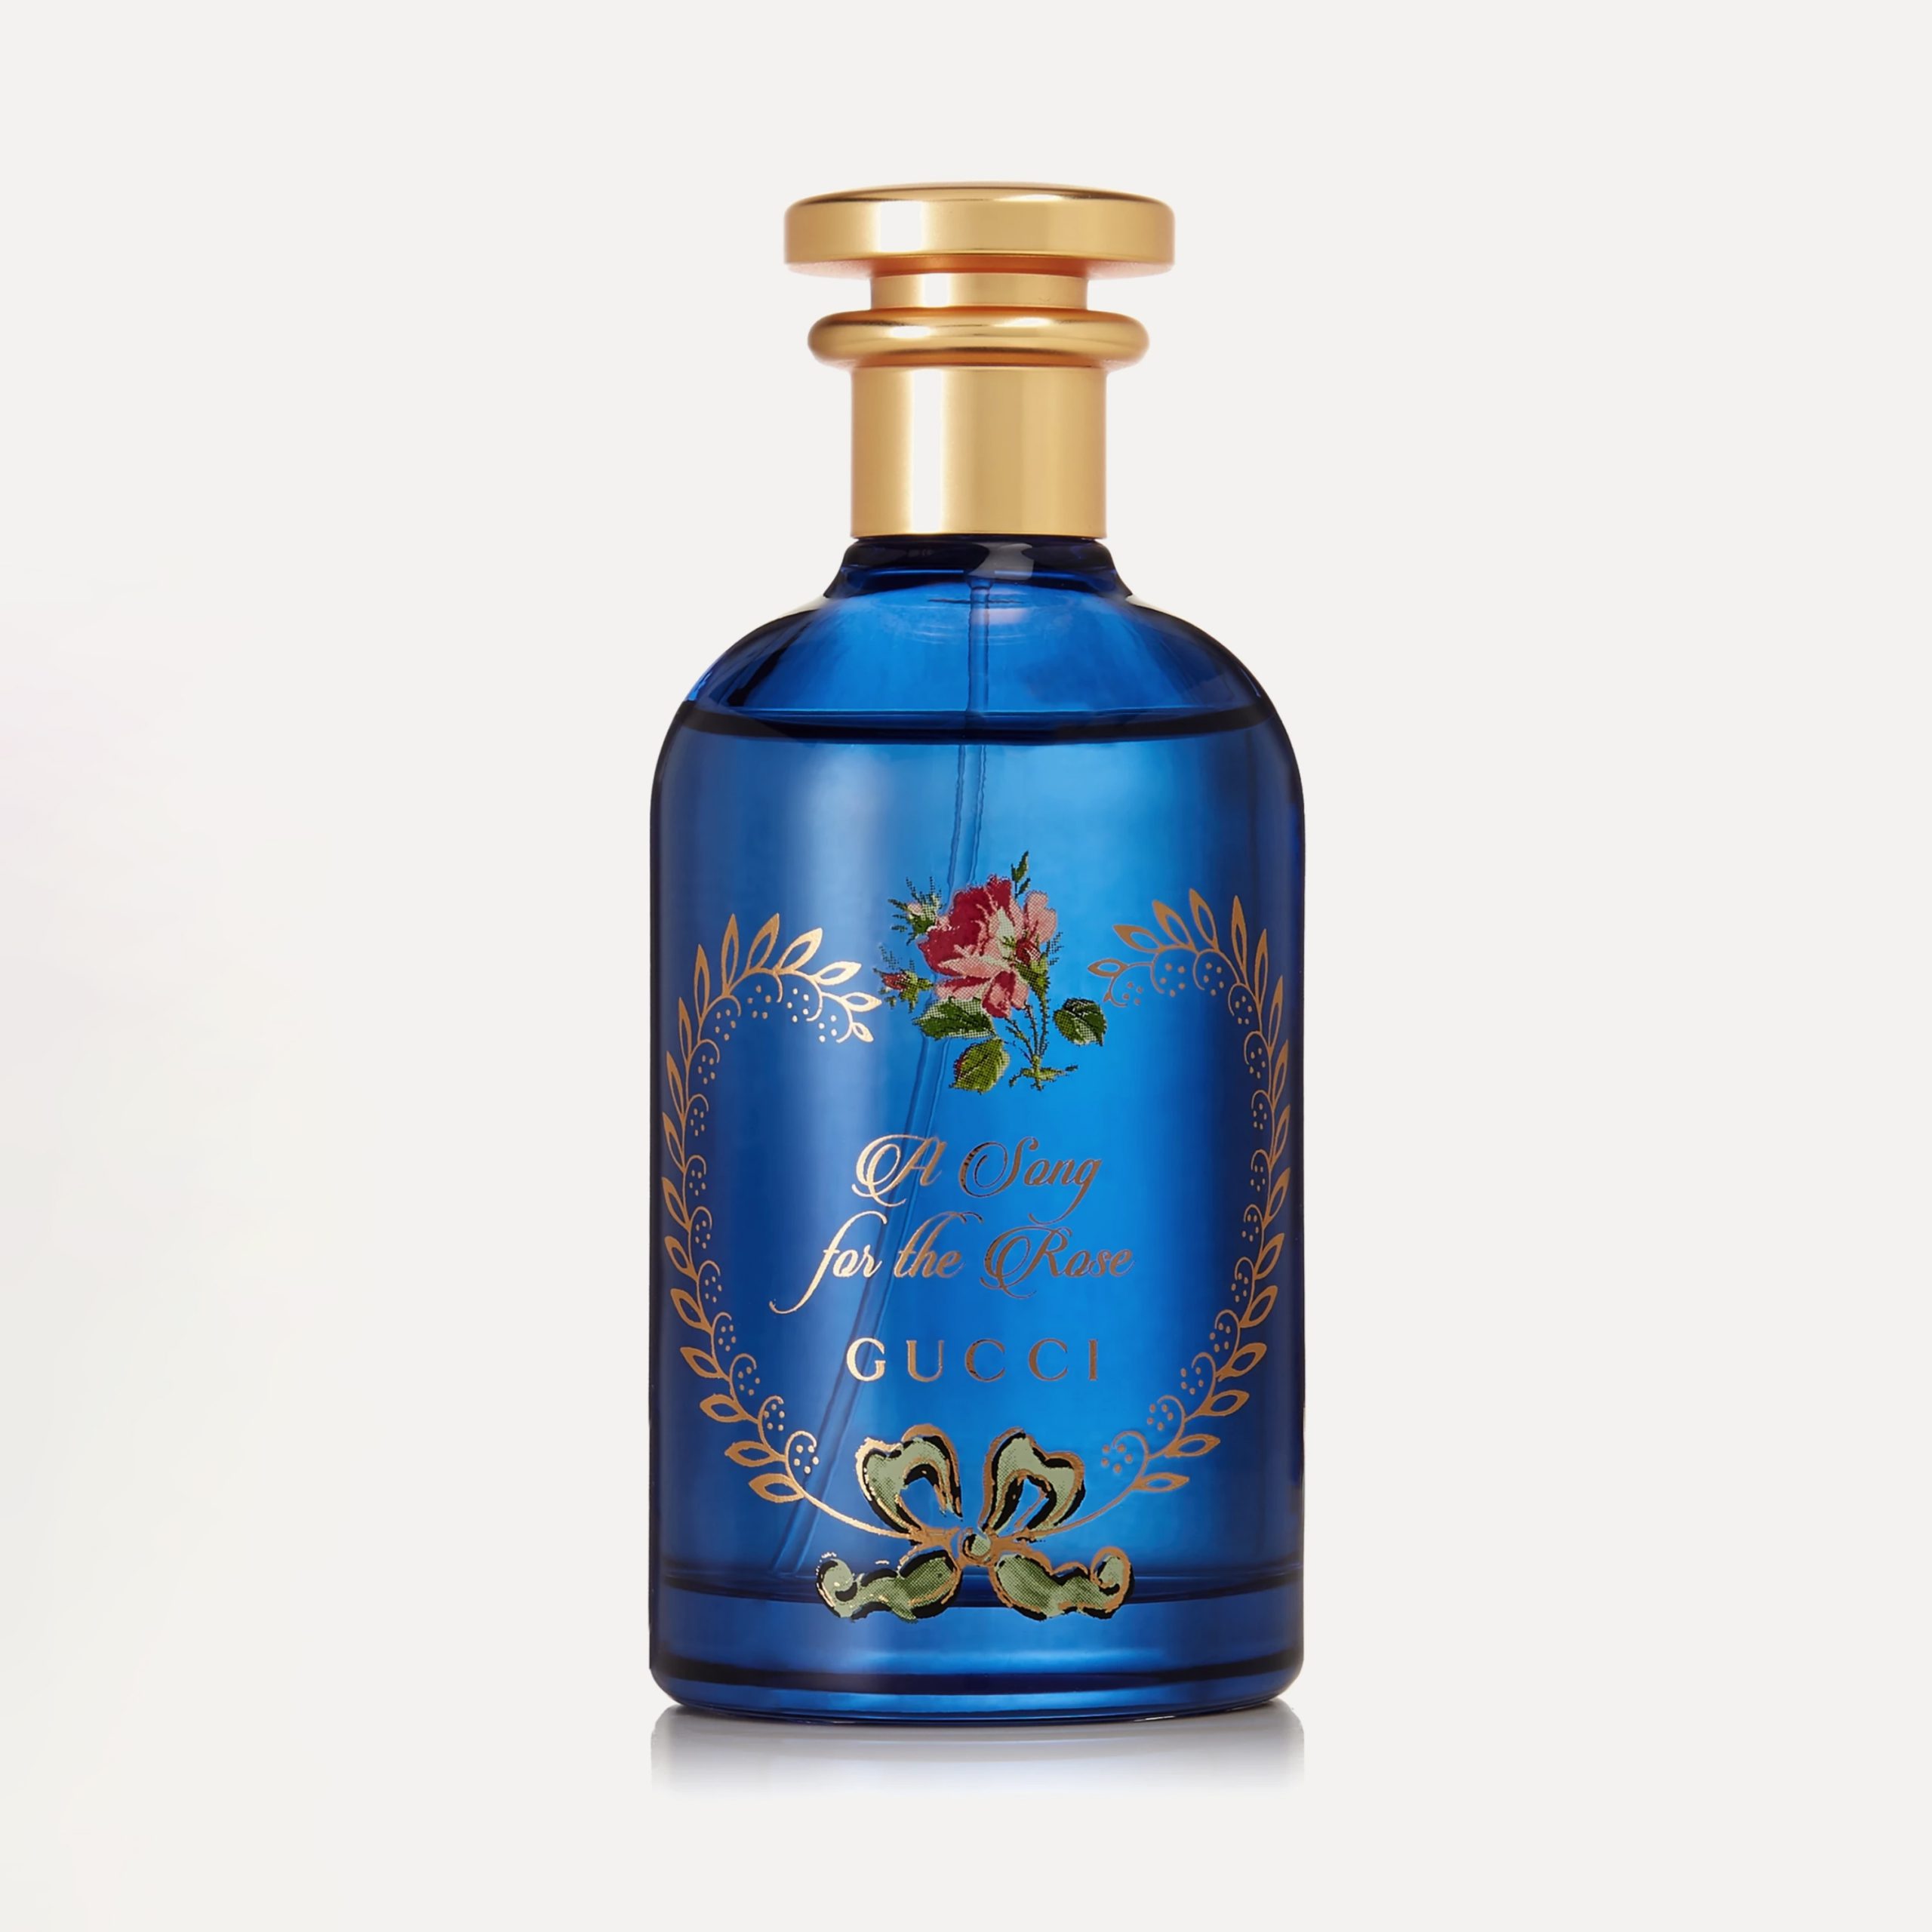 Gucci A Song For The Rose EDP 100ml - Nước hoa chính hãng 100% nhập khẩu  Pháp, Mỹ…Giá tốt tại Perfume168